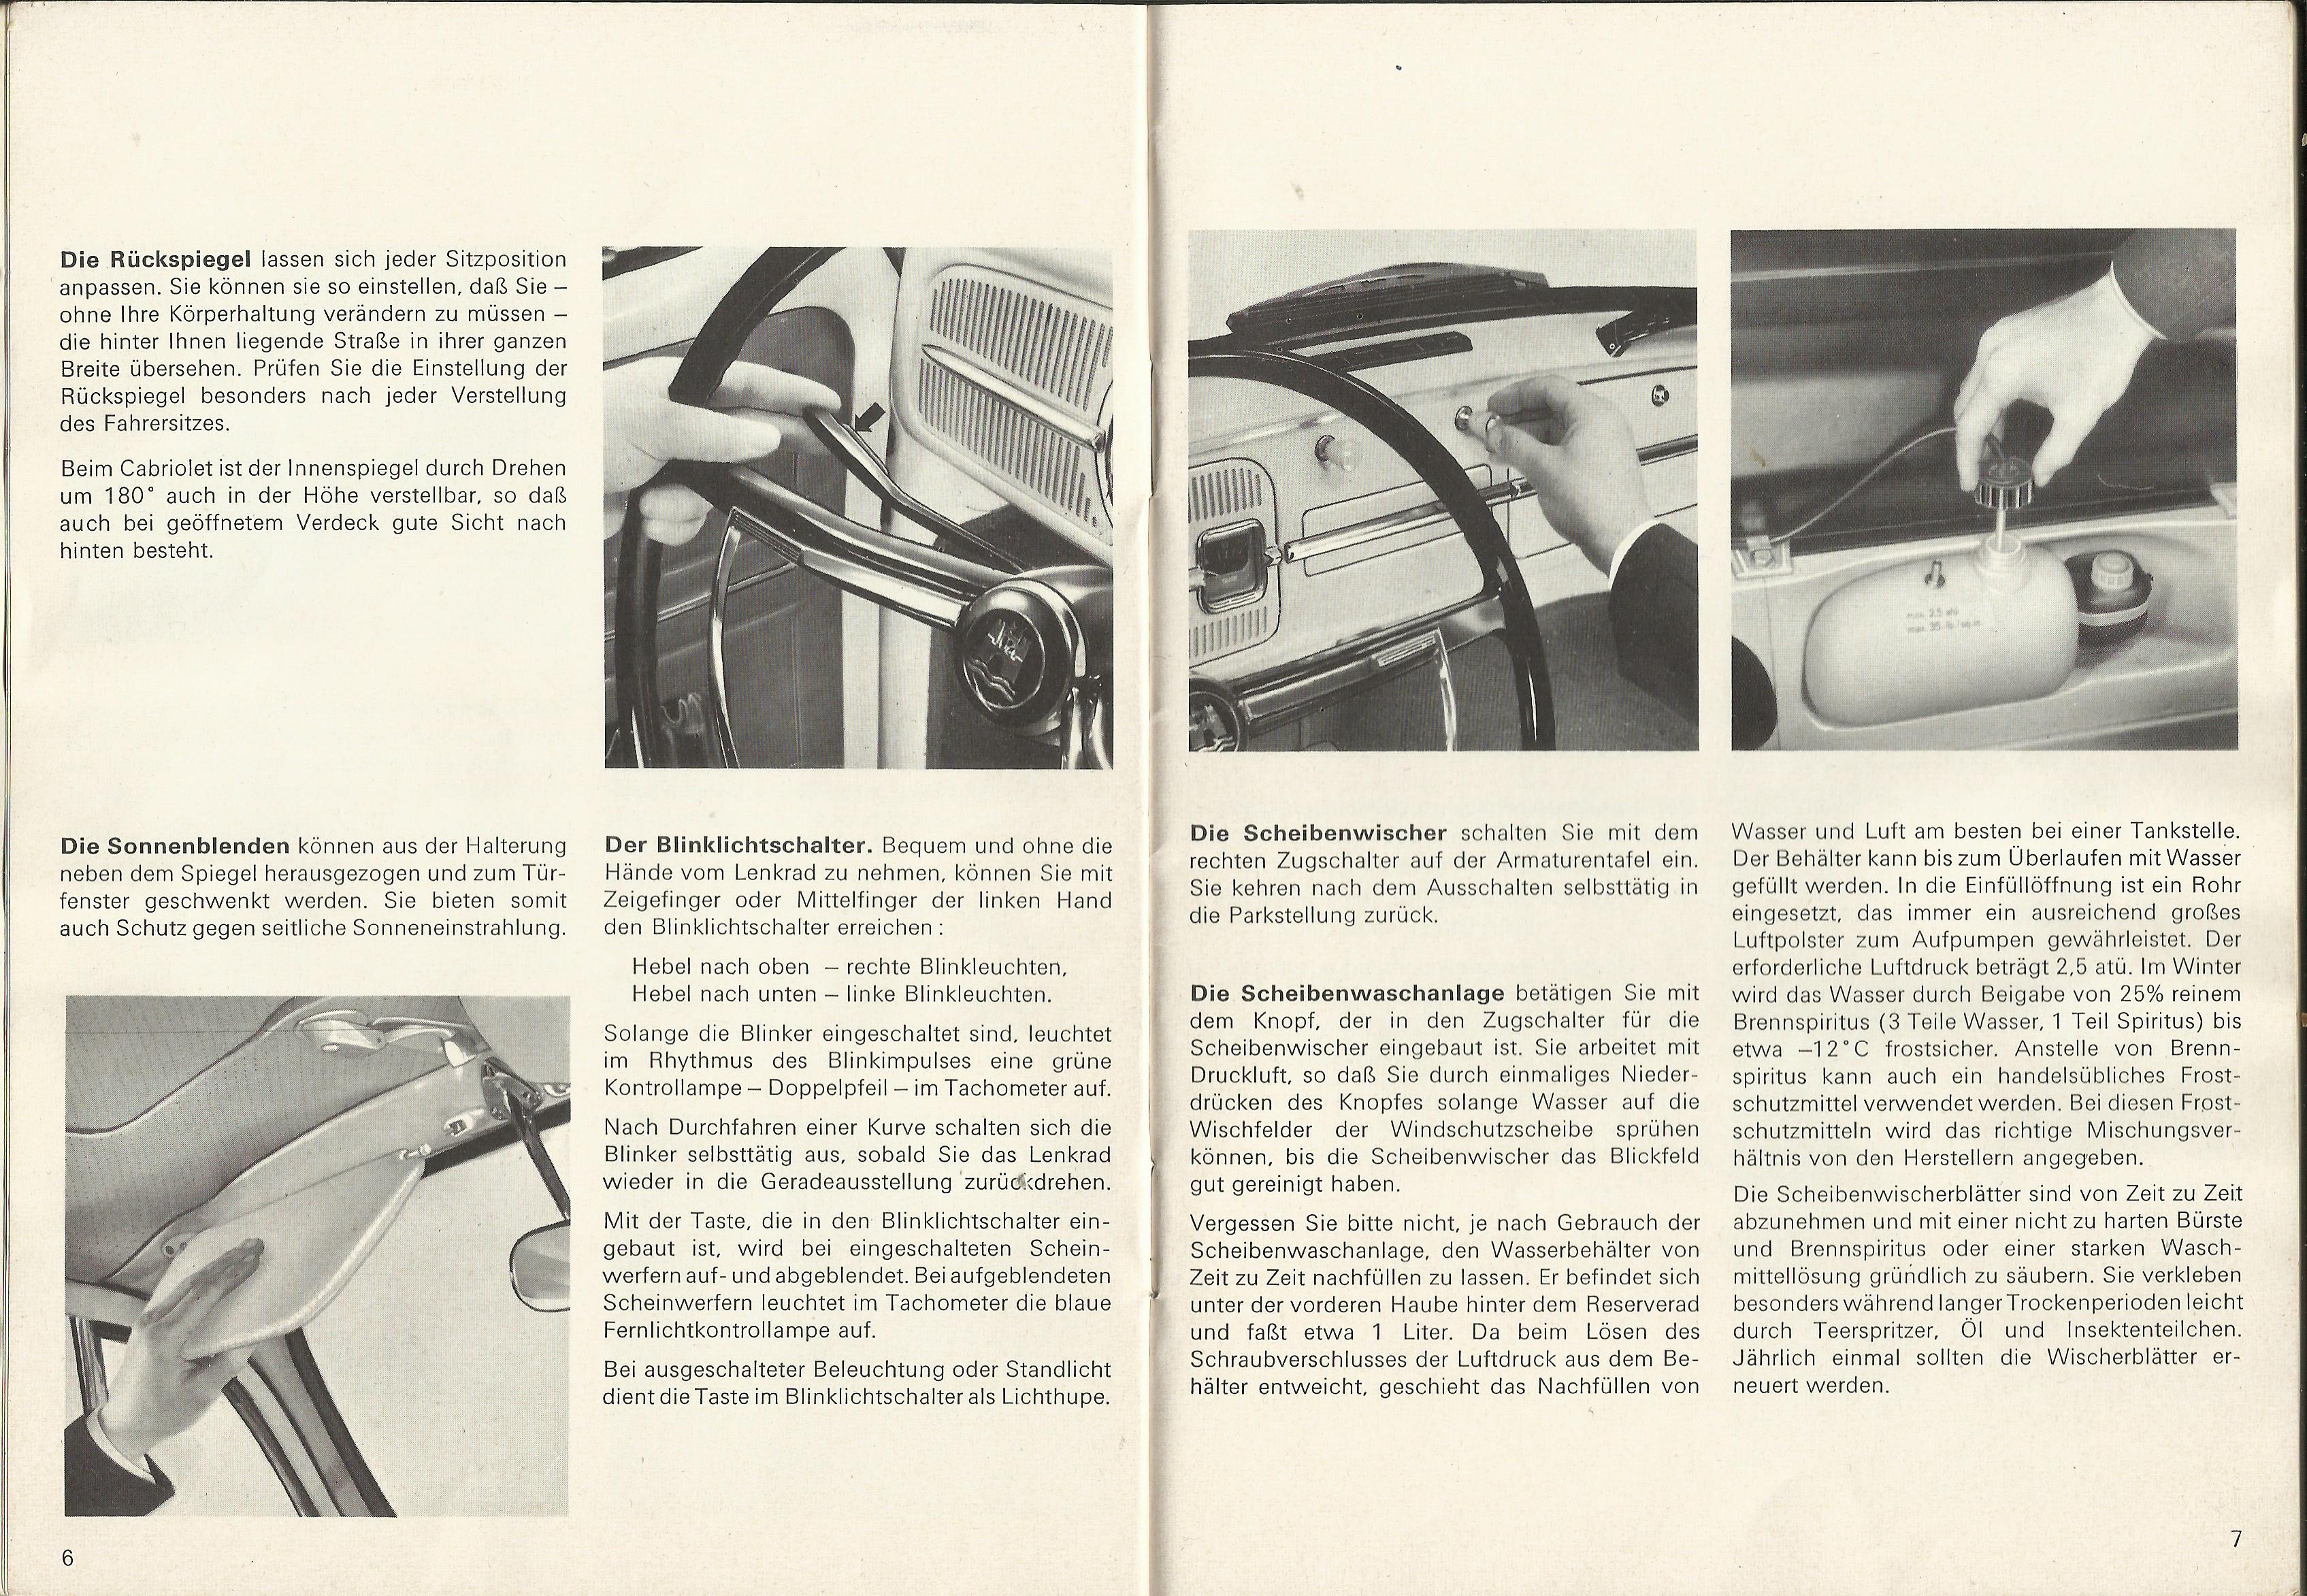  1966 - August 1965 - 1300 VW Bug Owner's Manual - German